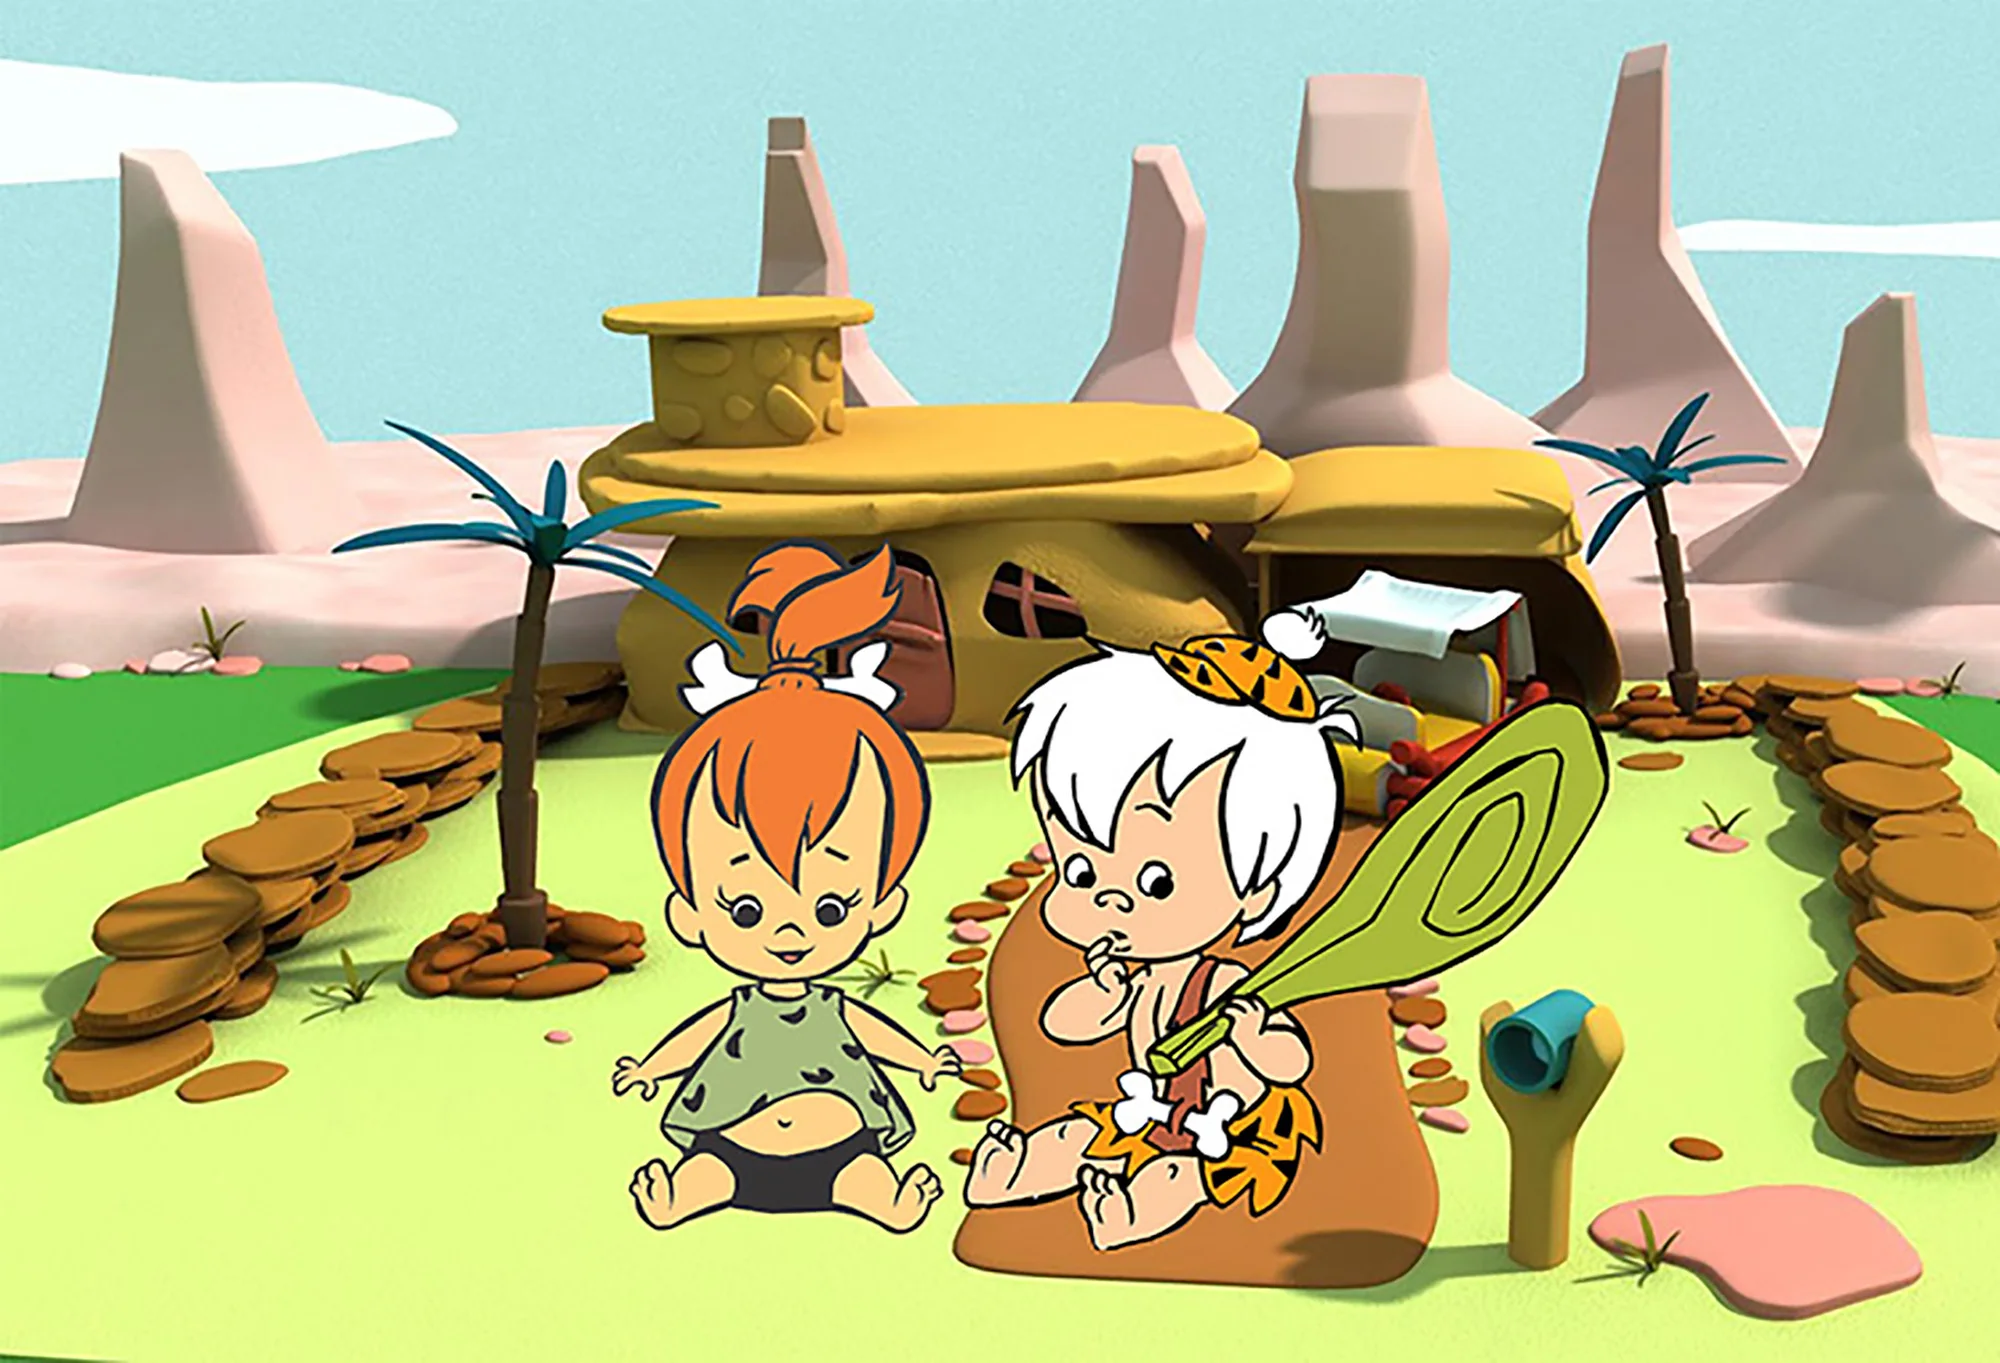 GFUITRR Bam Flintstones фон для фотосъемки День Рождения мультфильм фото фон виниловый фото стенд реквизит